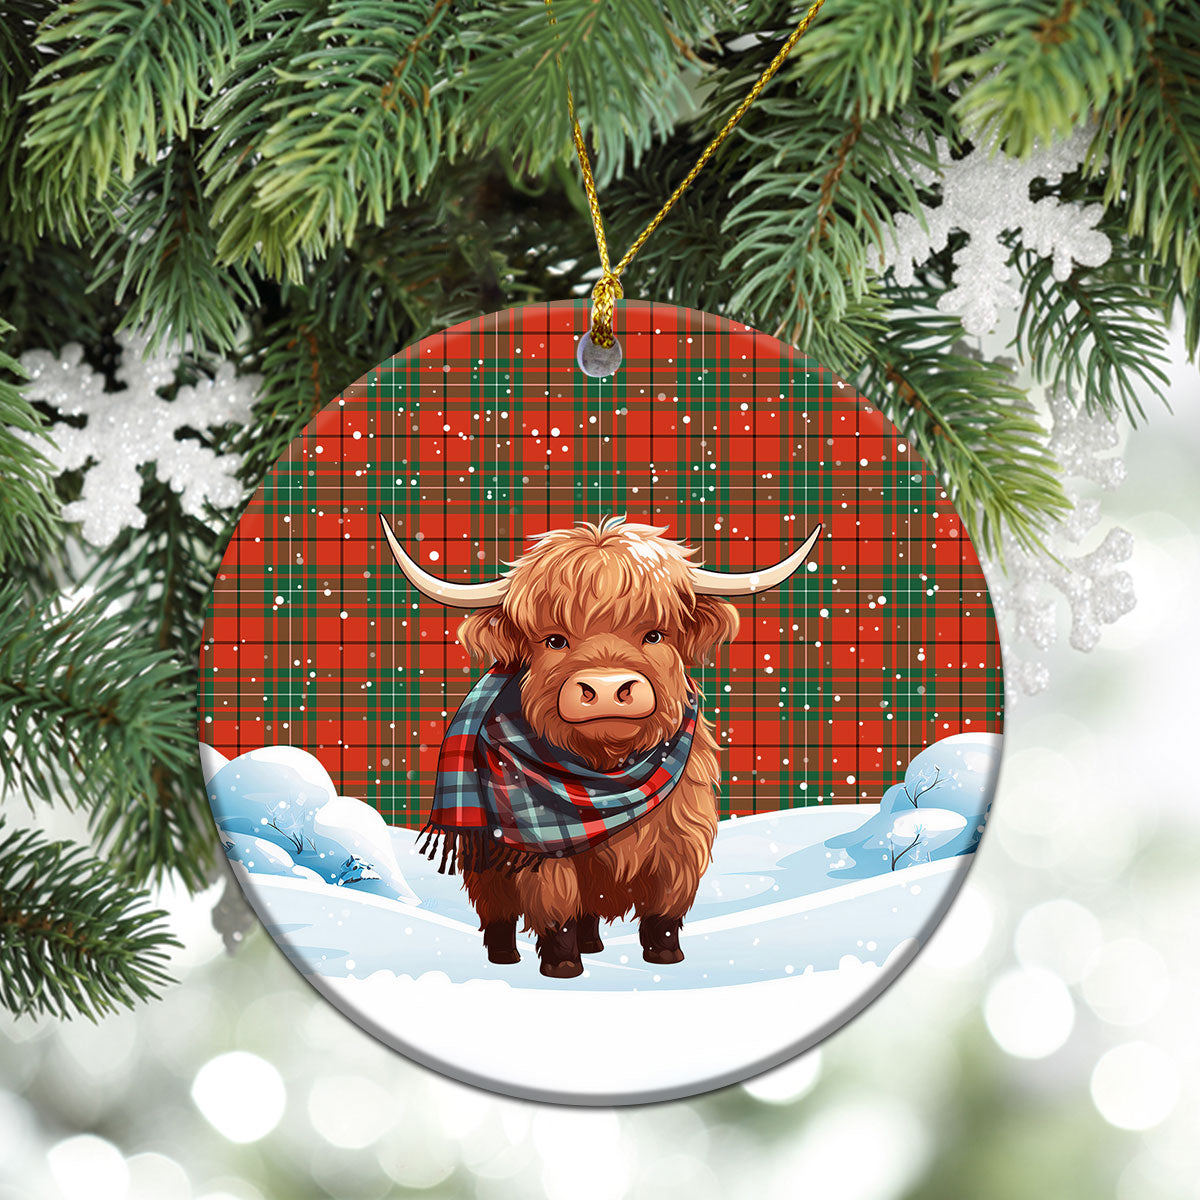 MacAulay Ancient Tartan Christmas Ceramic Ornament - Highland Cows Snow Style